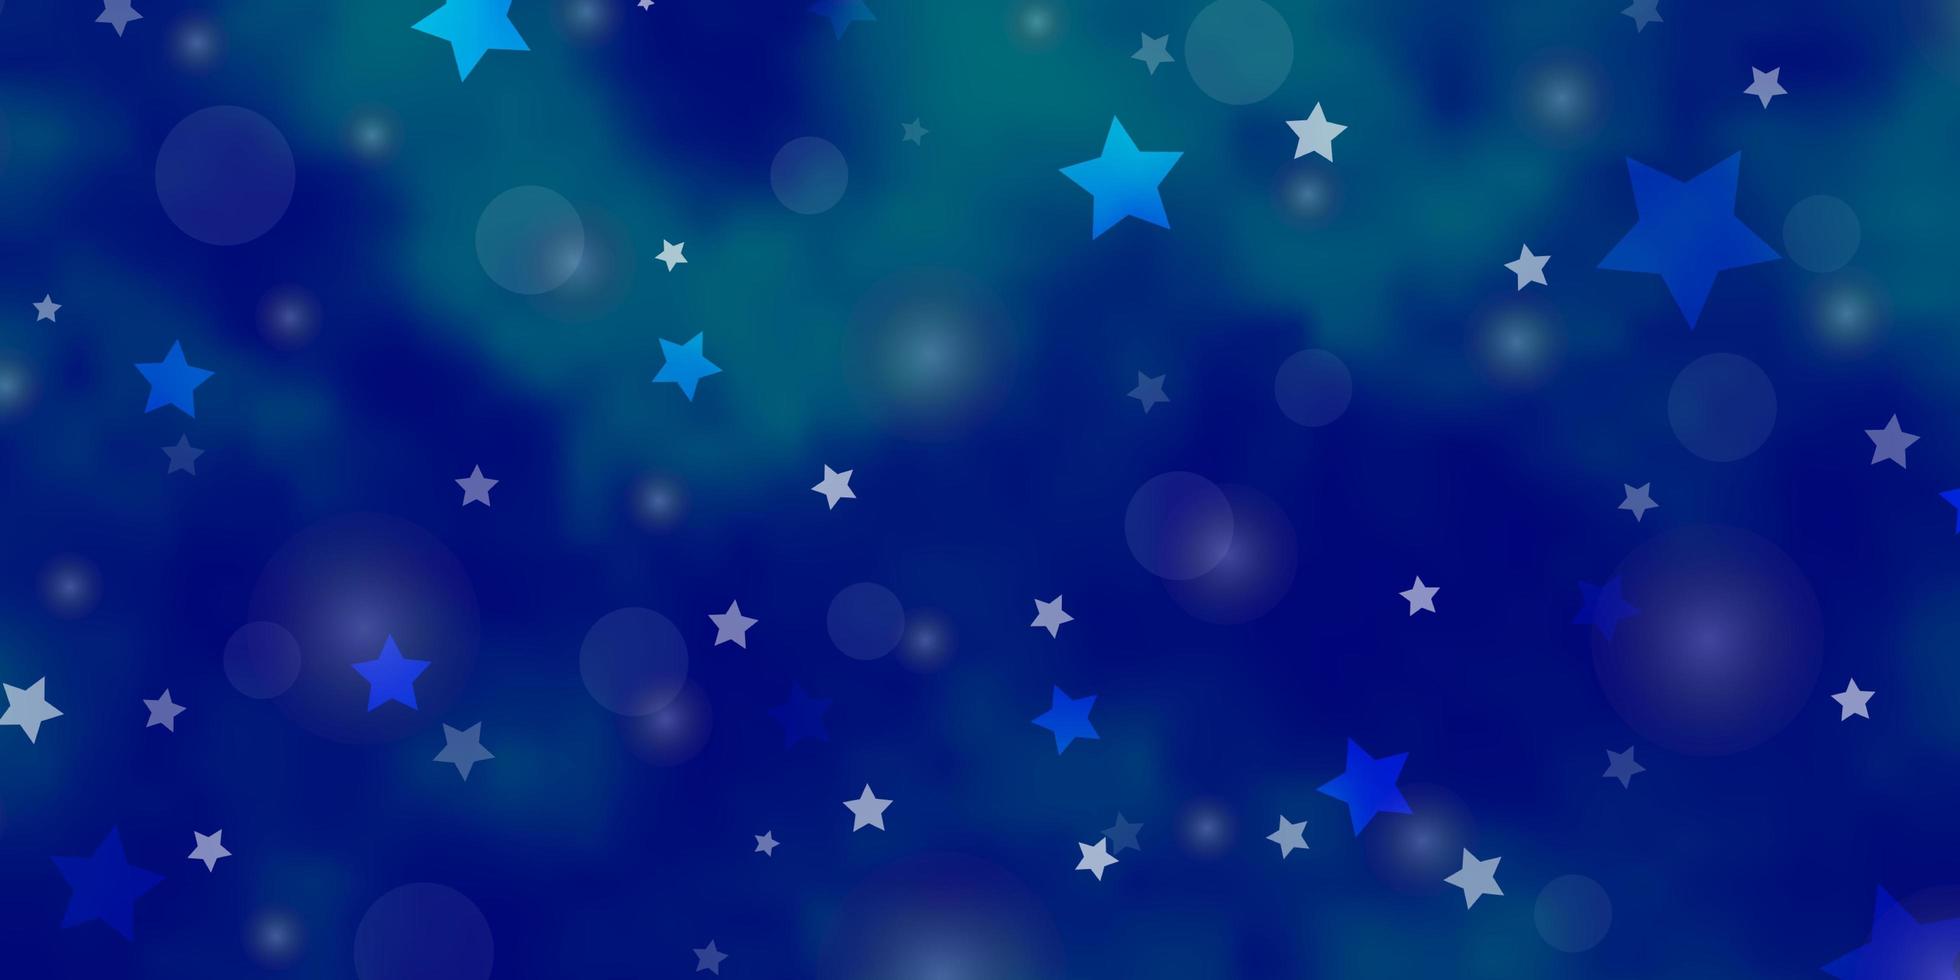 modello vettoriale azzurro con cerchi, stelle. illustrazione astratta con macchie colorate, stelle. trama per tapparelle, tende.